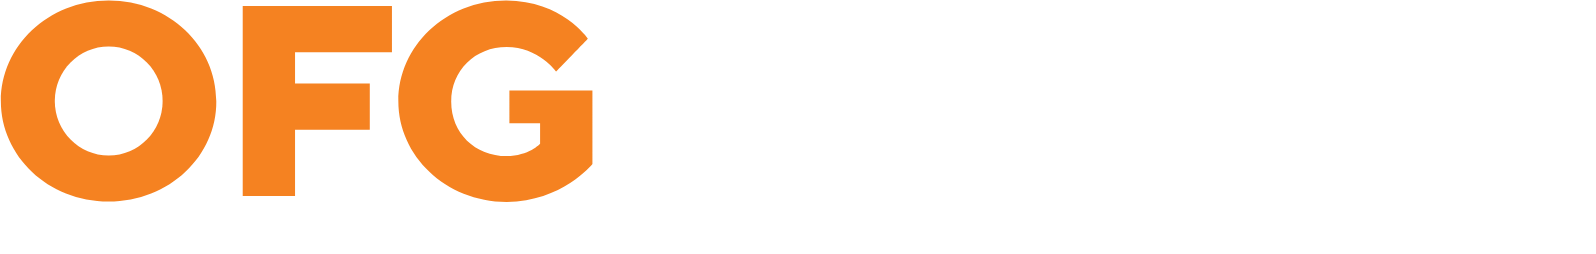 OFG Bancorp
 logo large for dark backgrounds (transparent PNG)